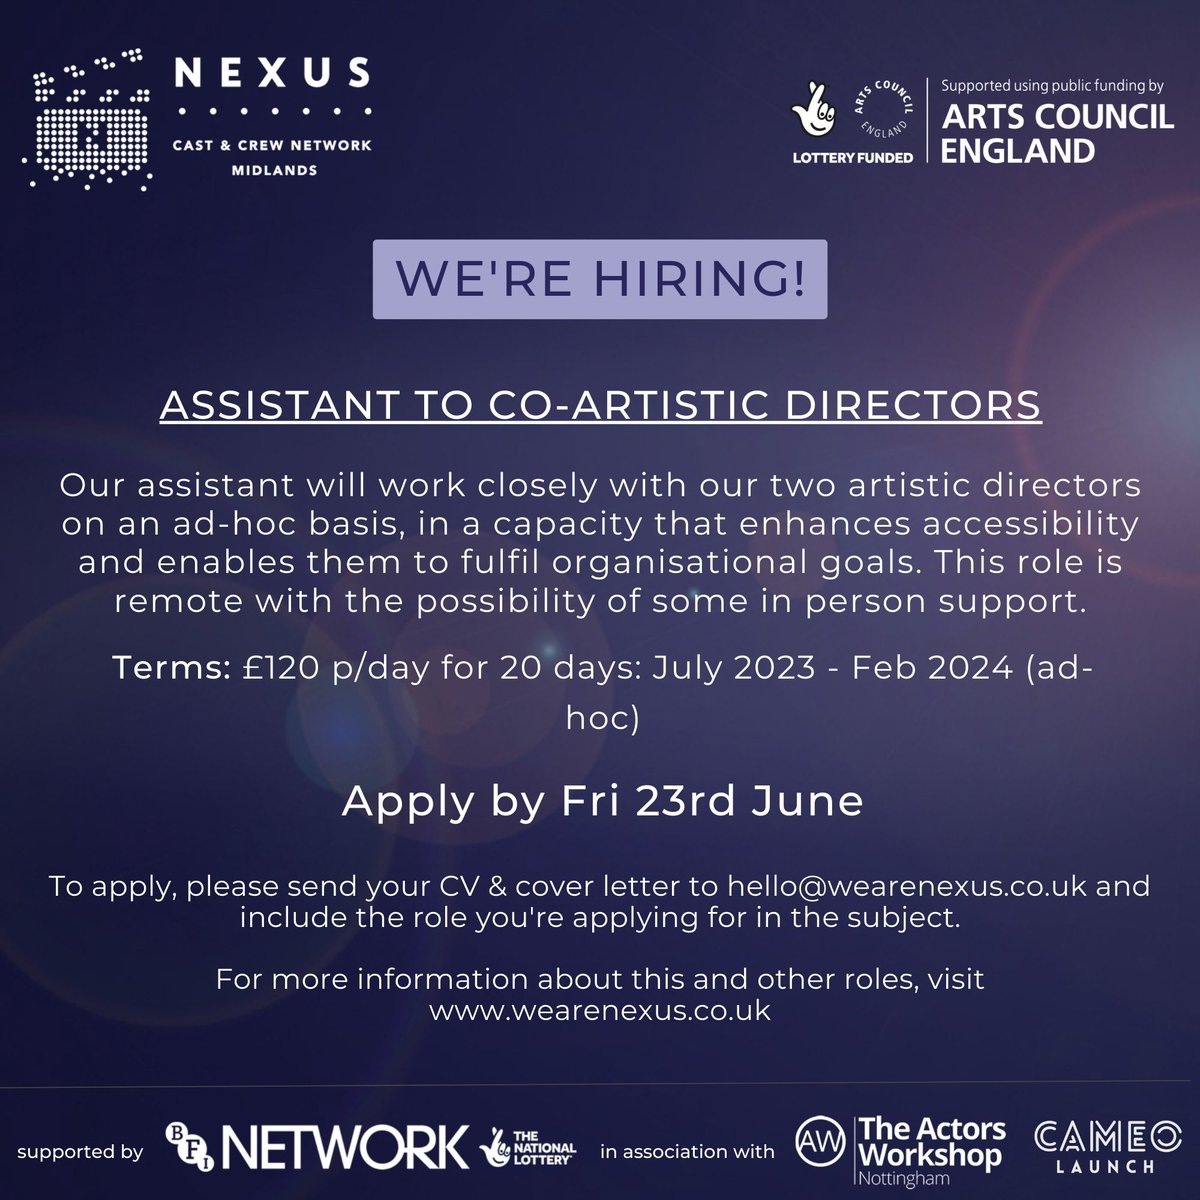 We're hiring! 

Assistant to co-artisitic directors.

Application deadline: FRIDAY 23RD JUNE

For more info go to: wearenexus.co.uk

#hiring #midlandsjobs #nexus #assistantjobs